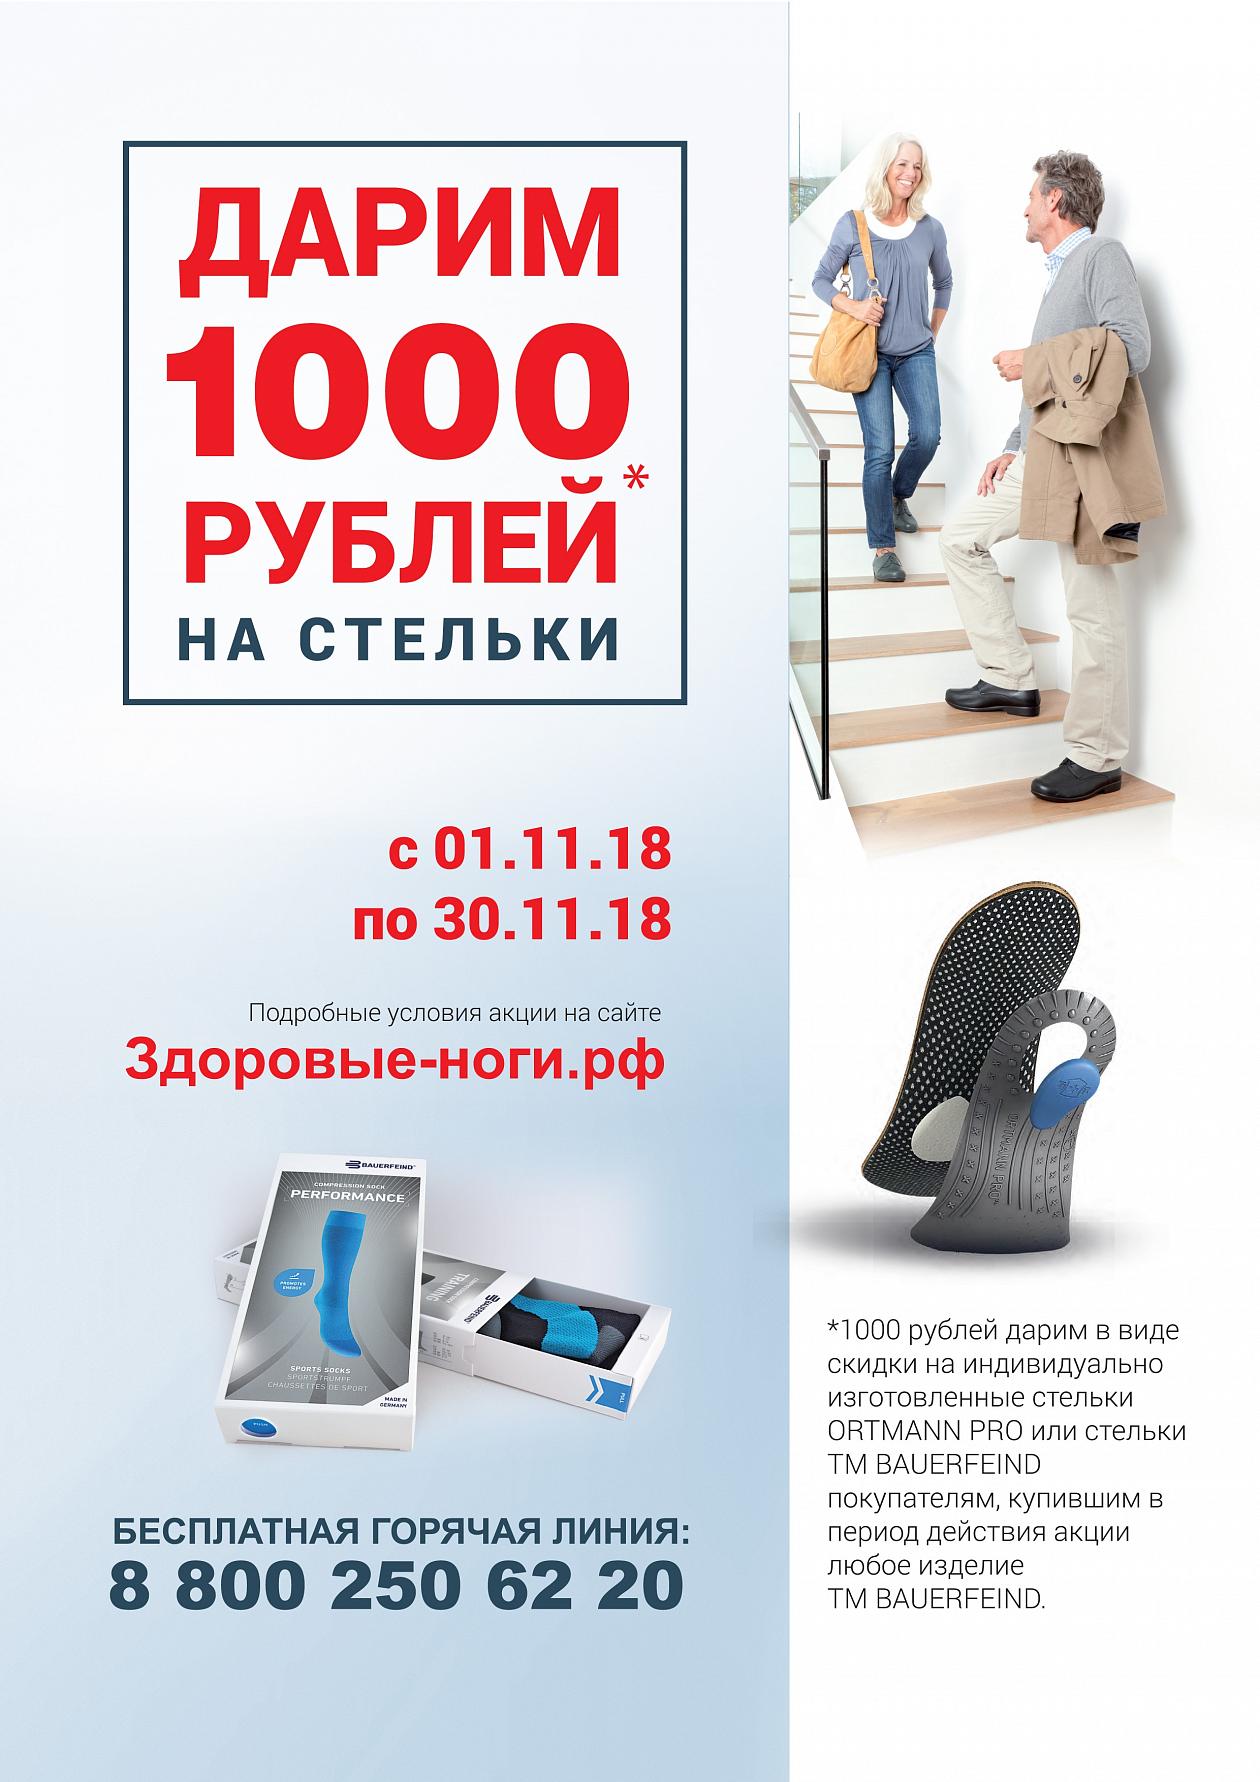 Успей получить подарок 1000 рублей 